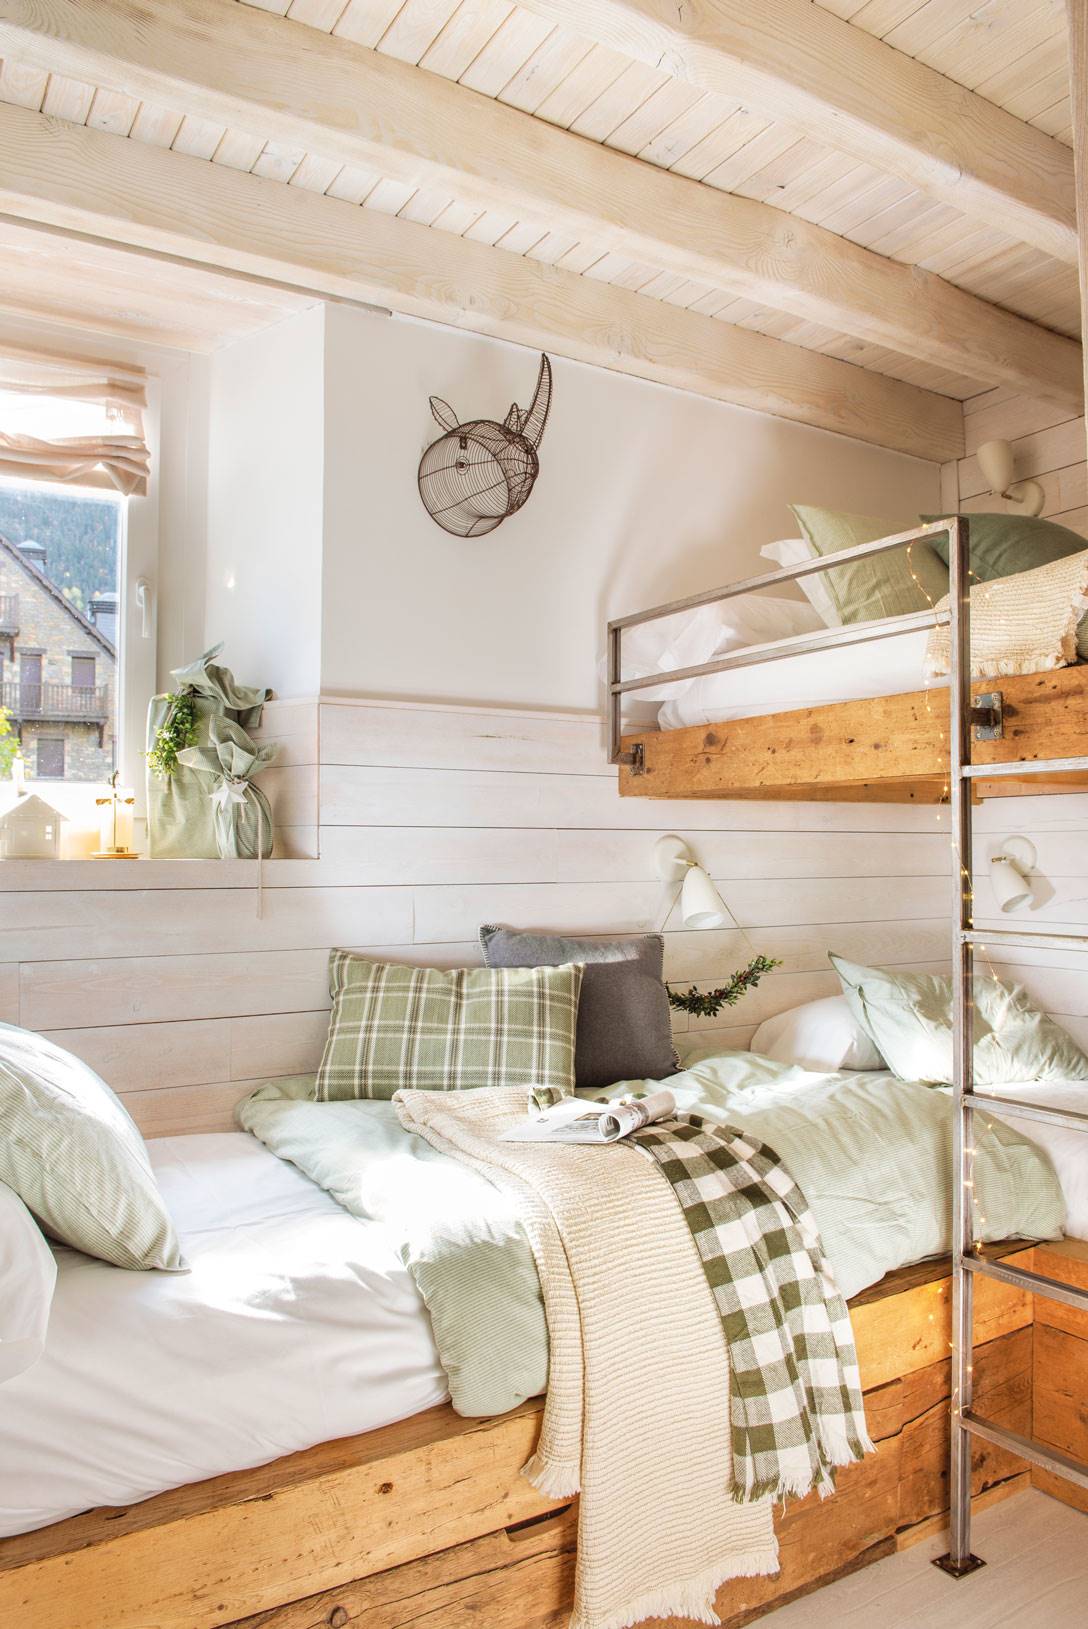 Dormitorio infantil con literas en madera natural y madera pintada de blanco.